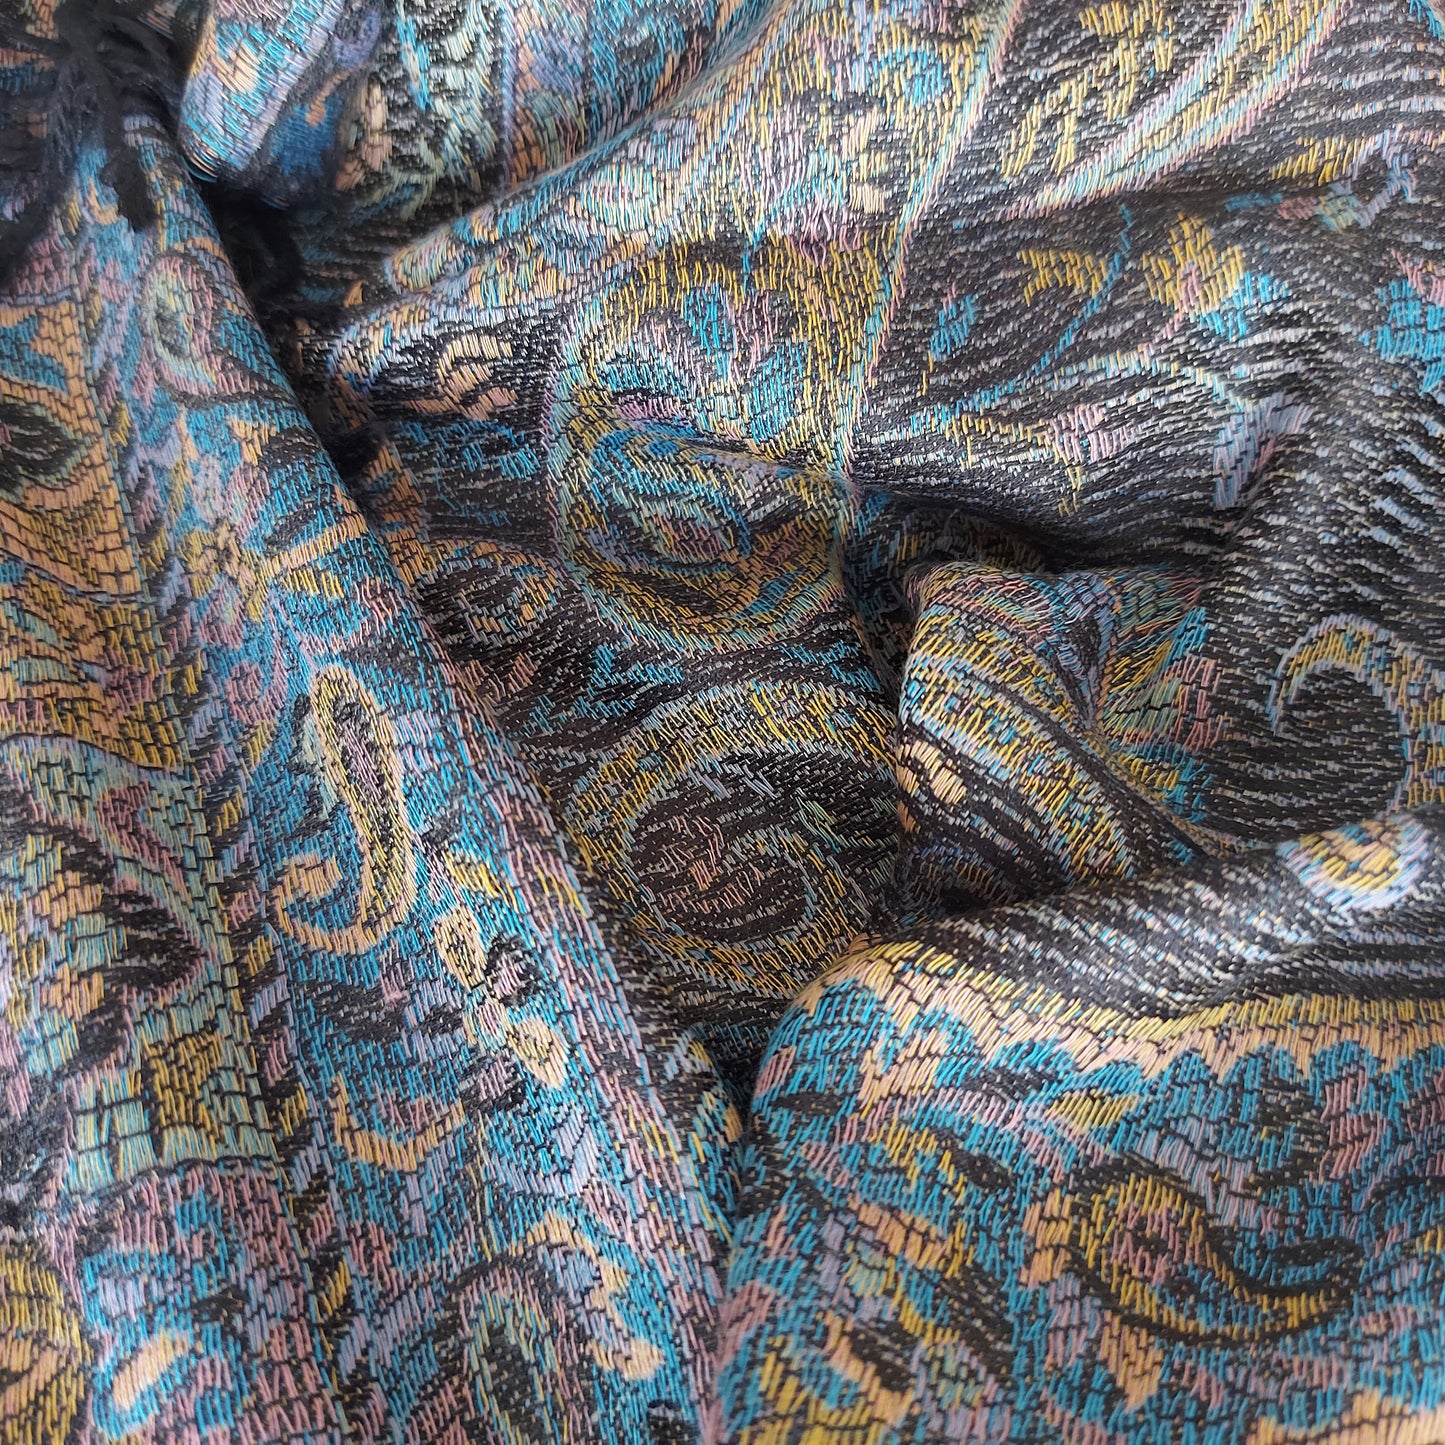 Étole tissée de couleur noir et bleu avec motif Cachemire floral. Écharpe foulard inspiration Pashmina.